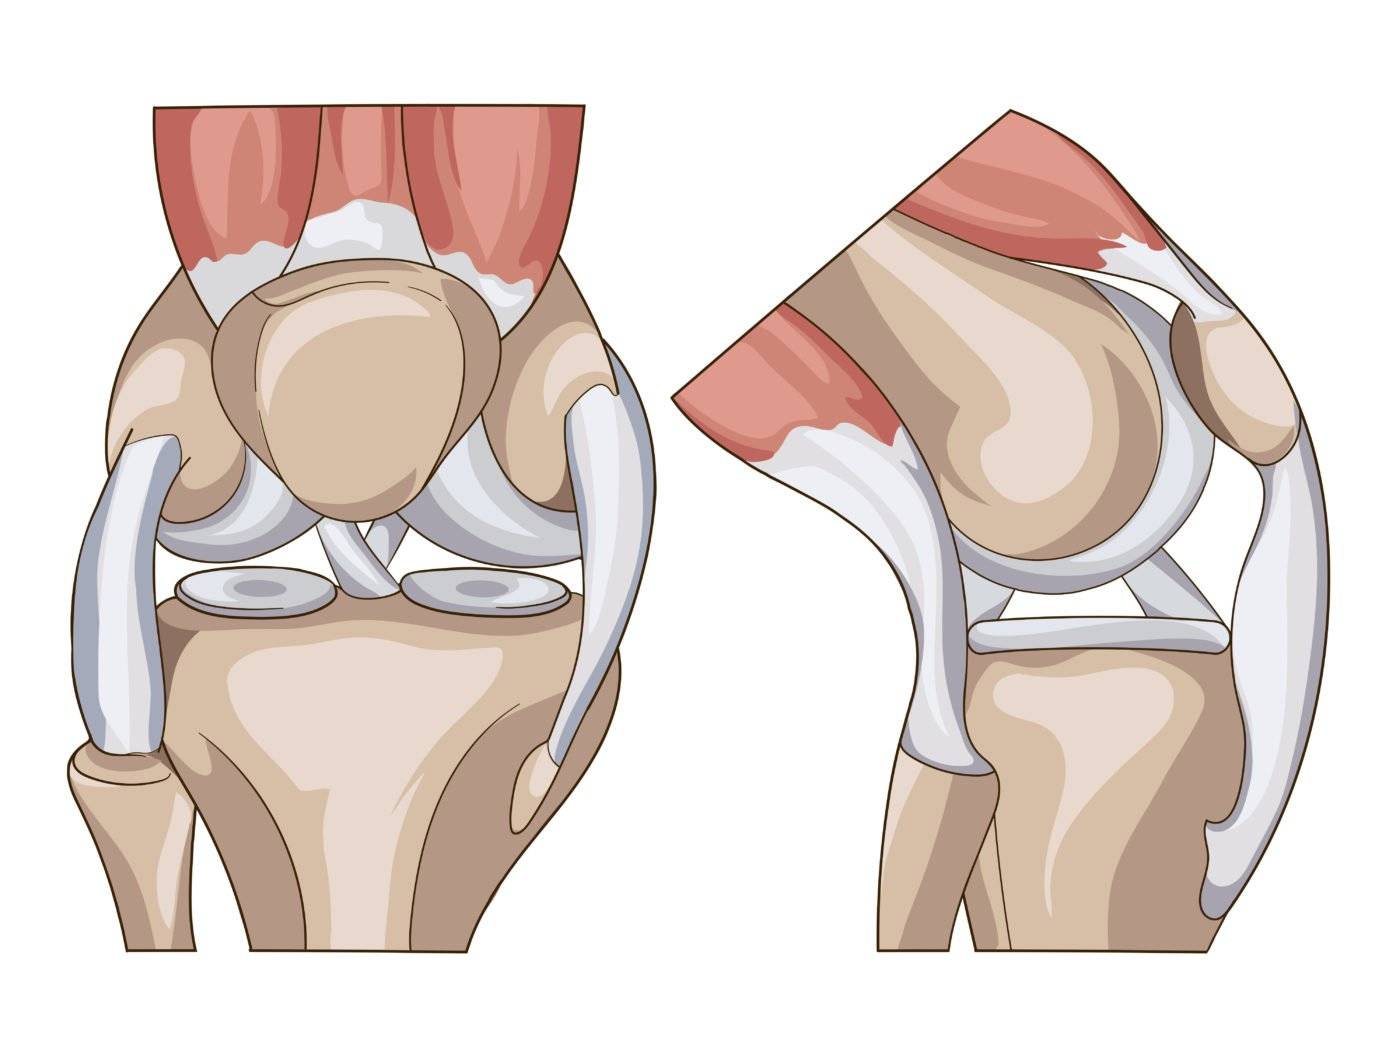 O joelho é formado por uma série de estruturas